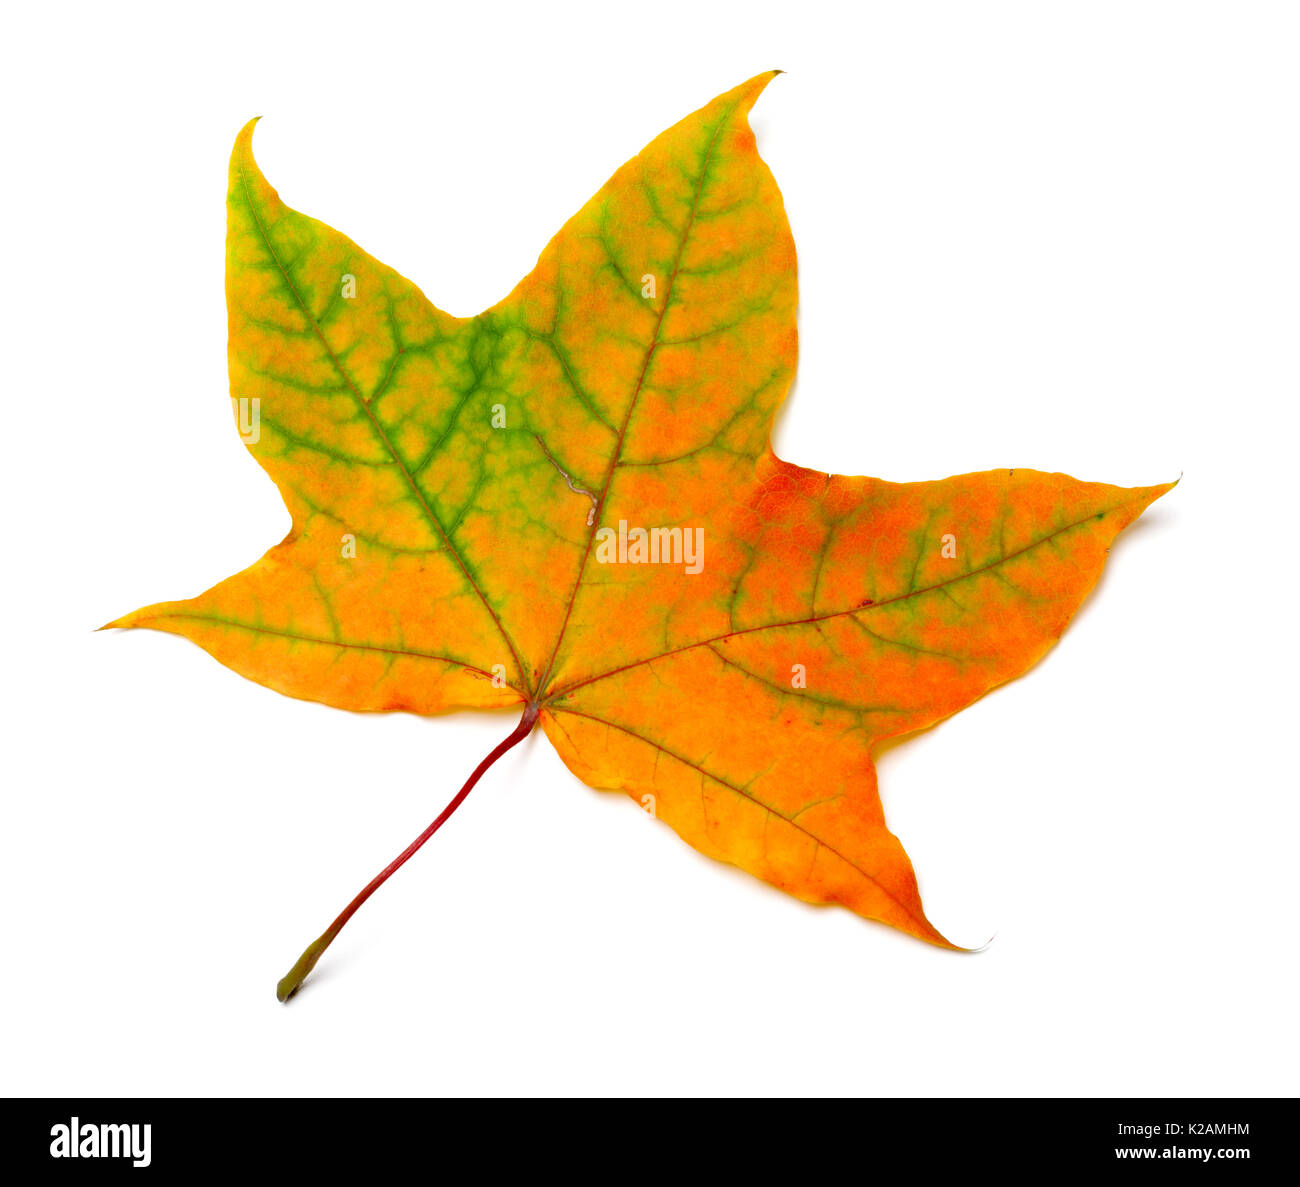 Autumn orange feuille d'érable verte avec des stries. Isolé sur fond blanc. Banque D'Images